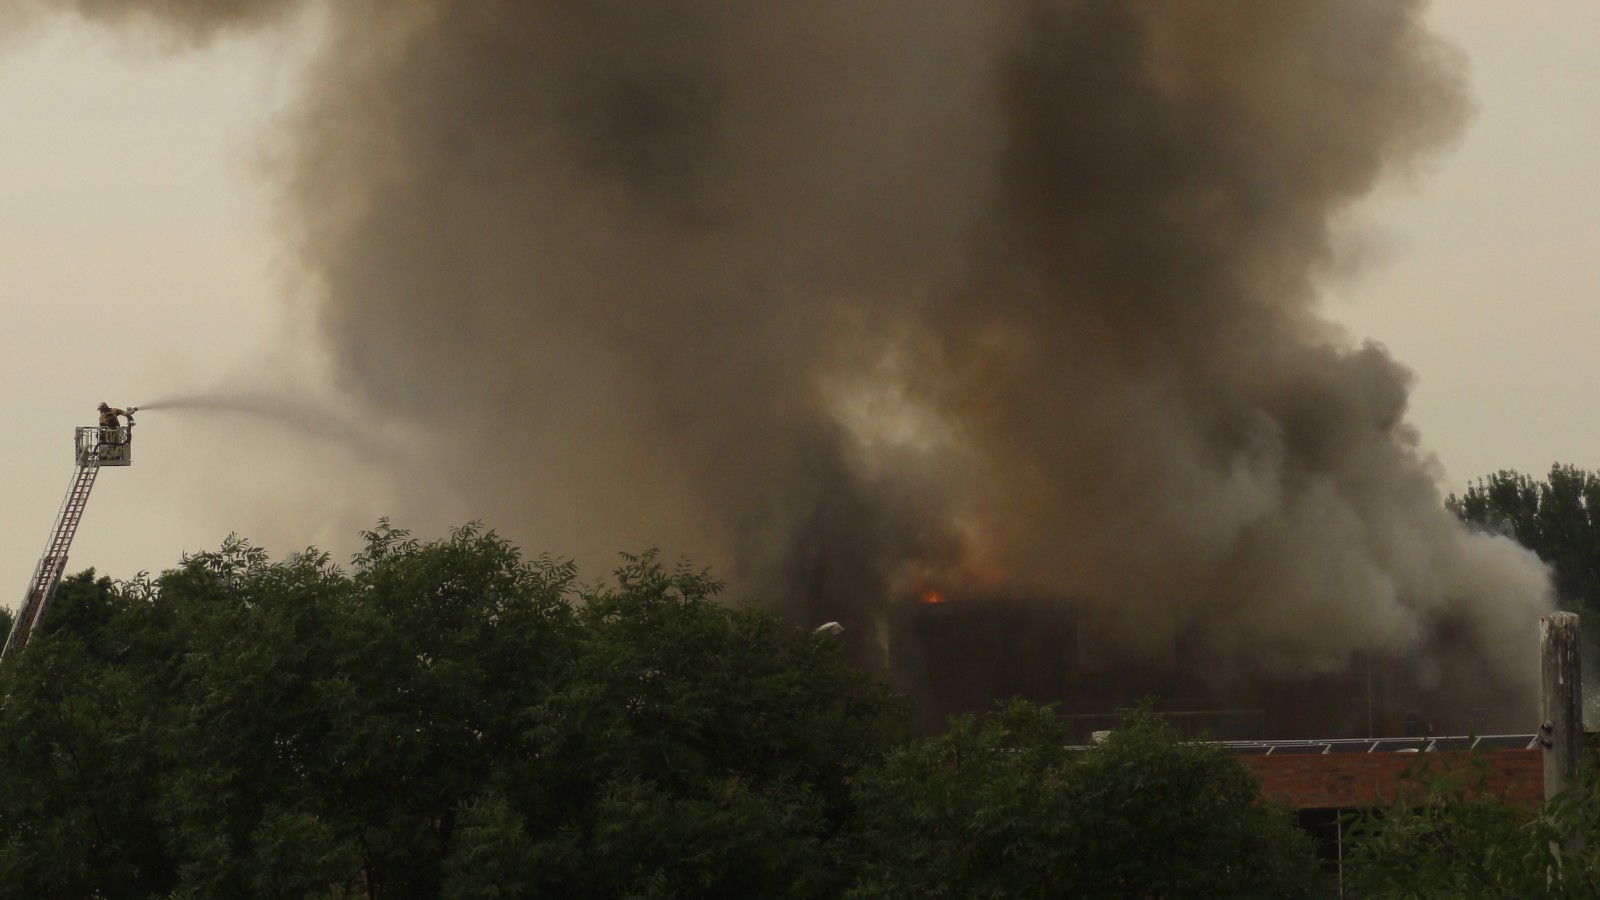 Brand in zuidoost. De brandweer blust brand in de buurt van het Bindelmeercollege. Vanaf hier is onduidelijk te zien welk pand in brand staat. 